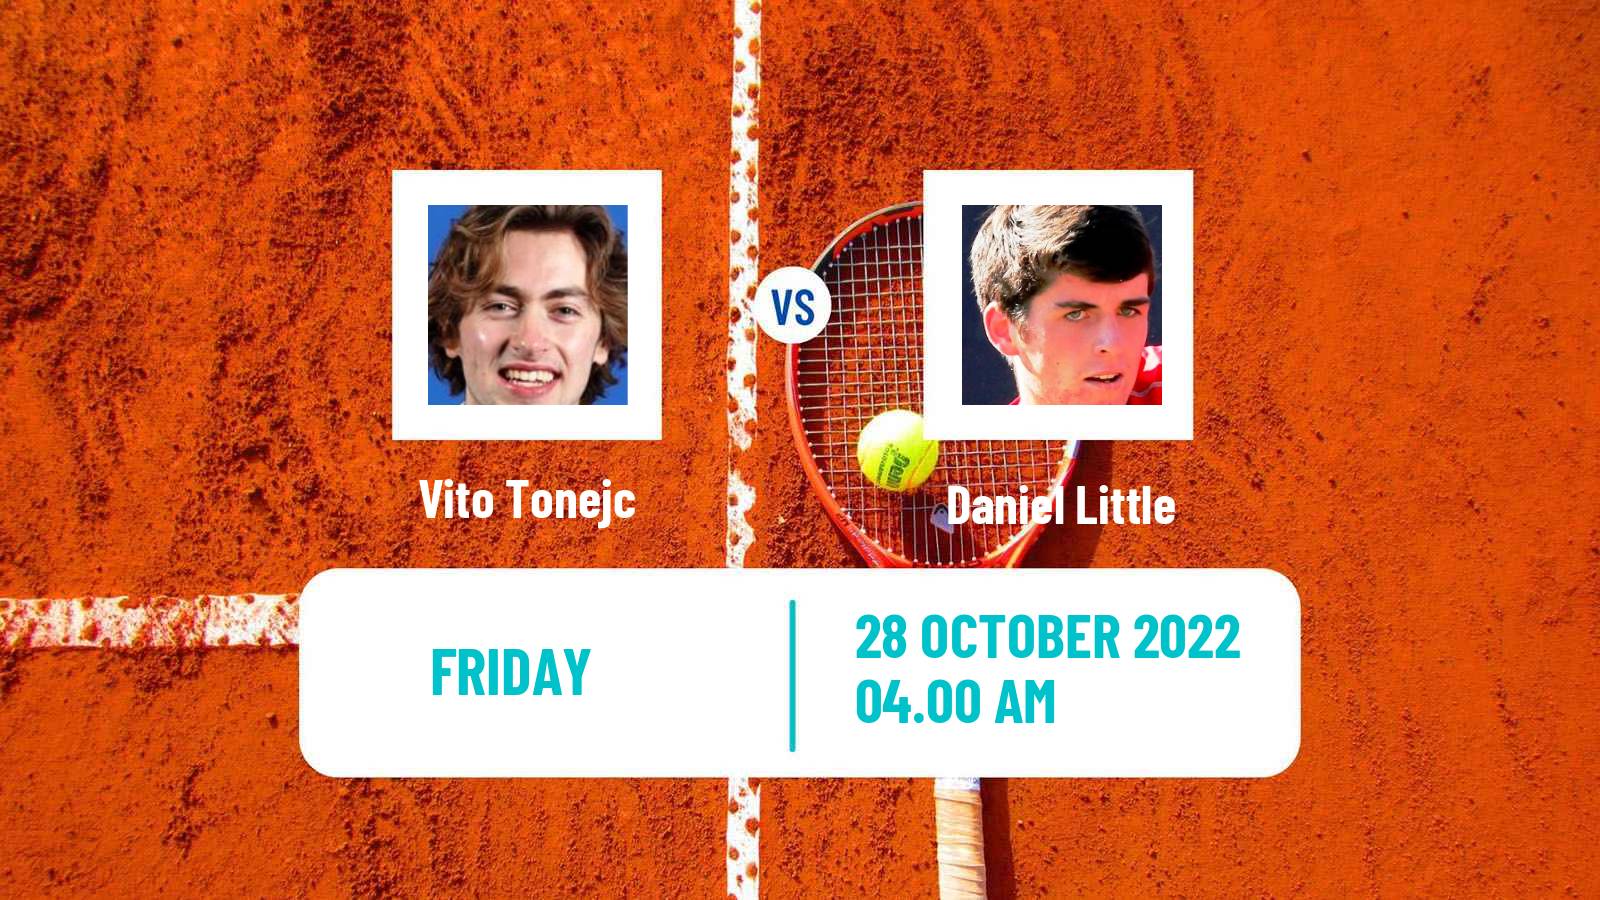 Tennis ITF Tournaments Vito Tonejc - Daniel Little